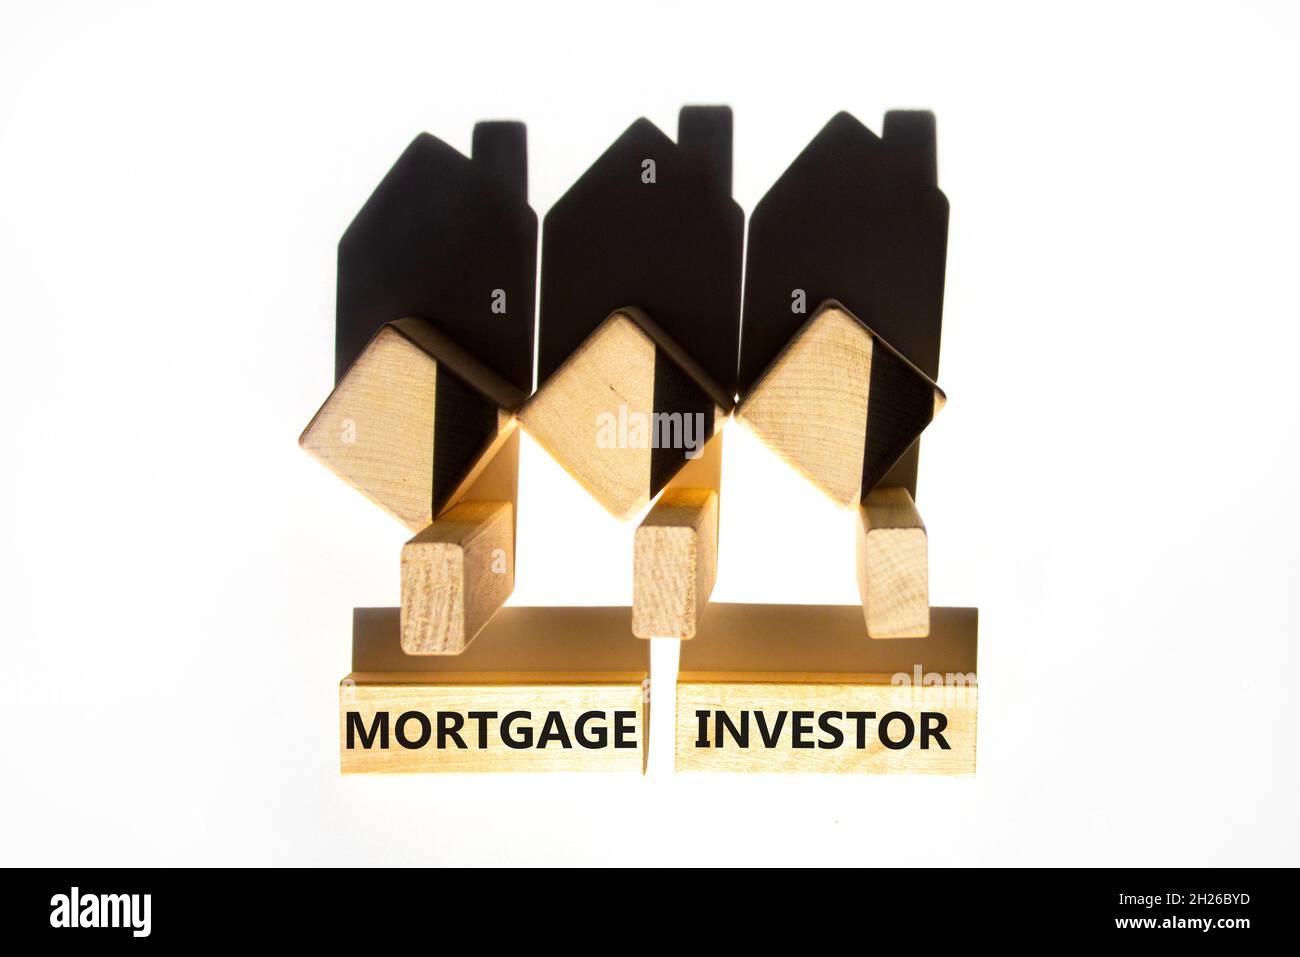 Symbole investisseur hypothécaire.Mots-concepts 'Mortgage investisseur' sur des blocs de bois près de maisons miniatures en bois de l'ombre.Magnifique fond blanc.Unité commerciale Banque D'Images